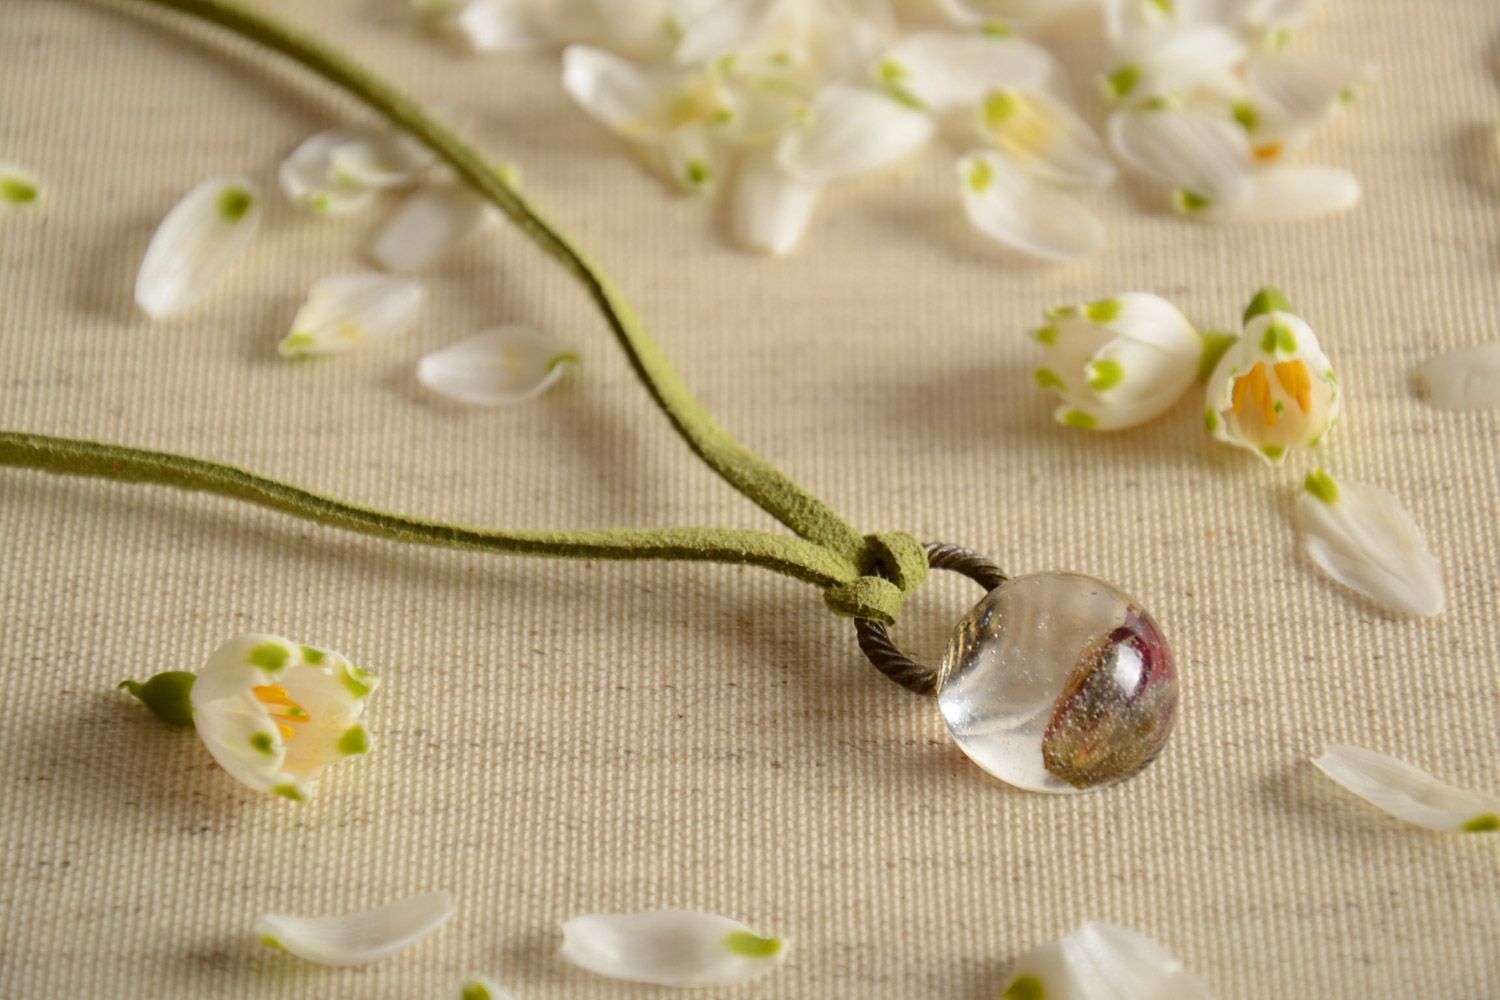 Кулон с цветком в эпоксидной смоле на замшевом шнурке ручной работы в форме шара фото 1